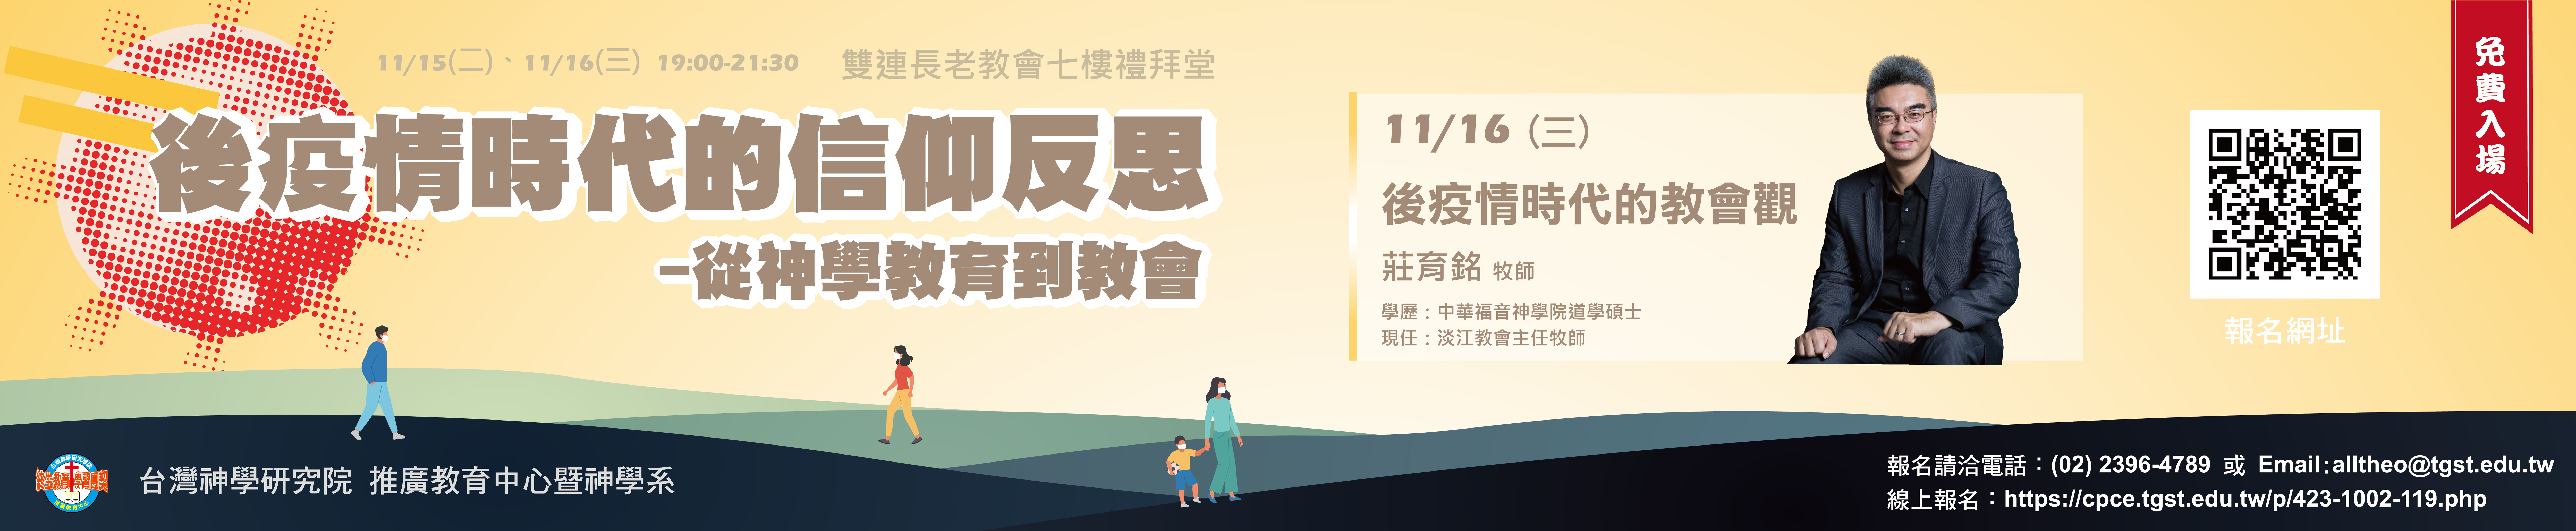 #90932 社團法人中華華人基督徒文字協會（10/3-9）底部廣告